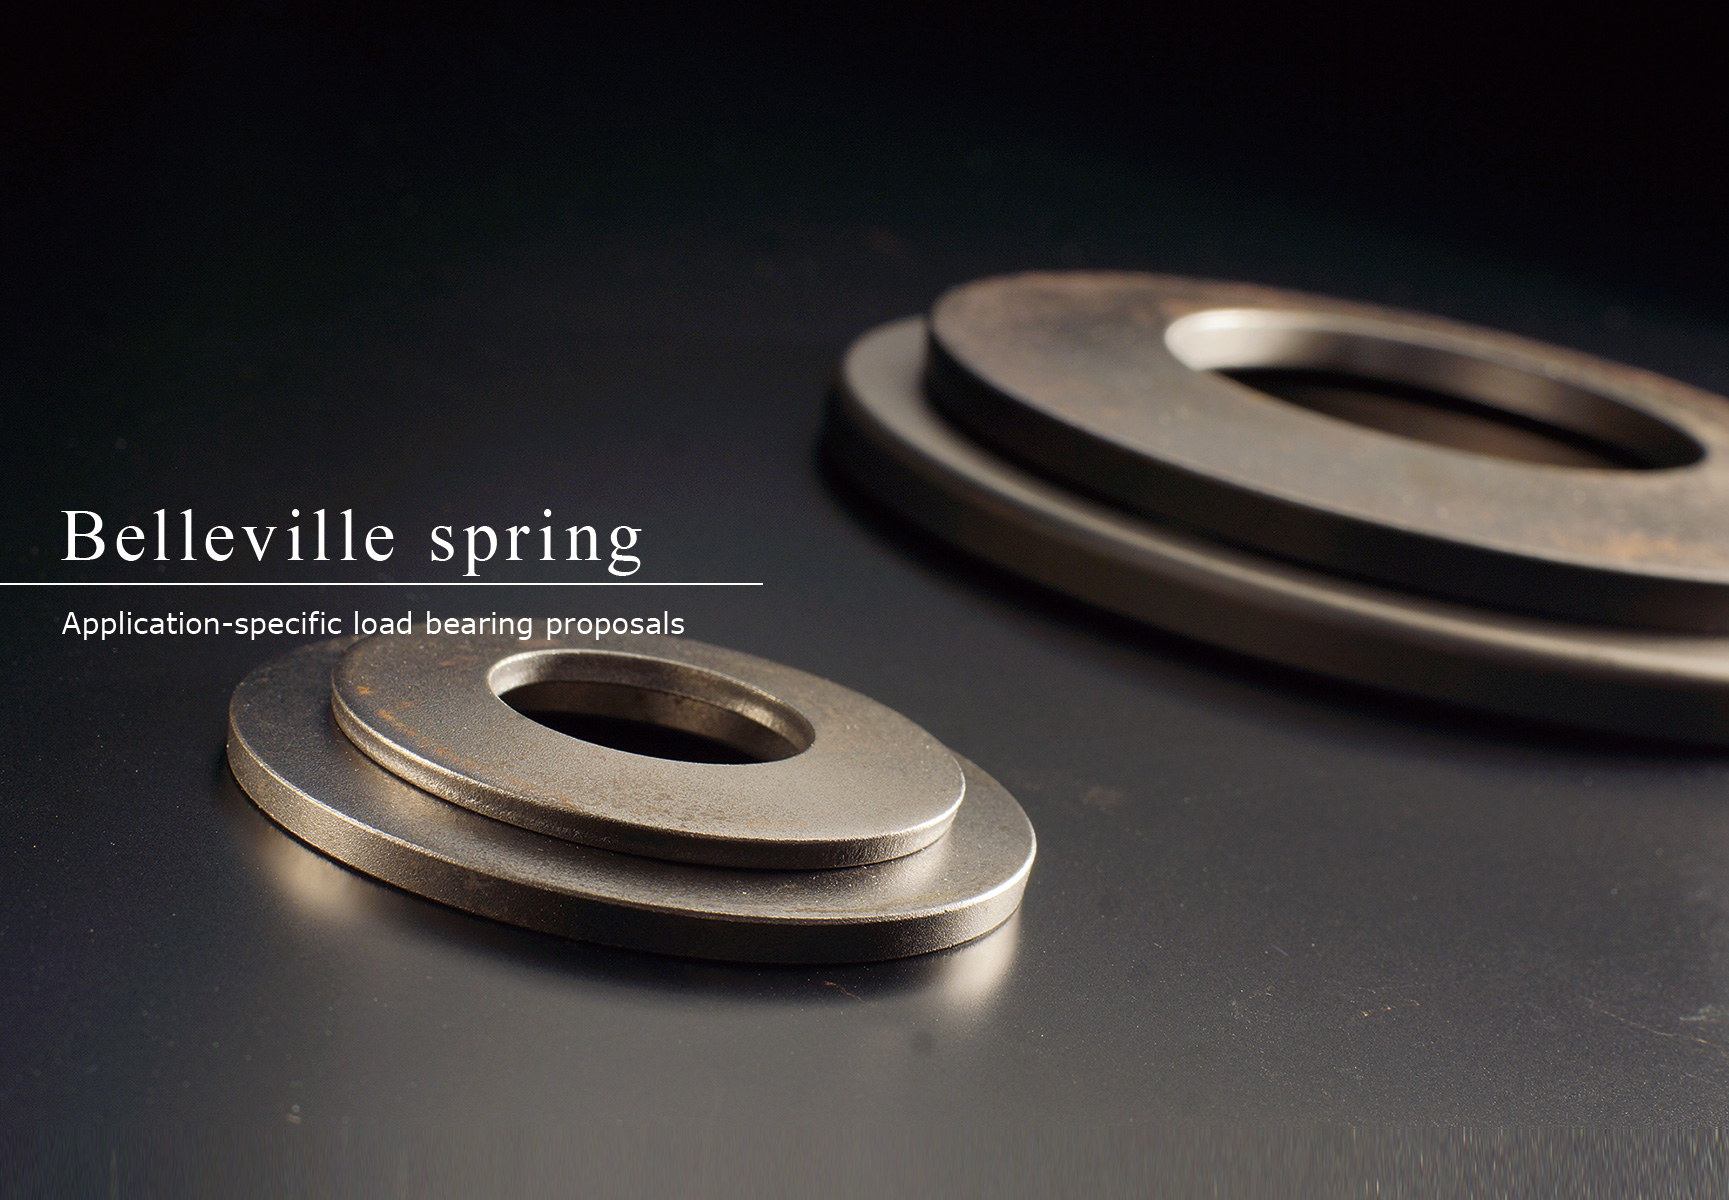 Belleville spring